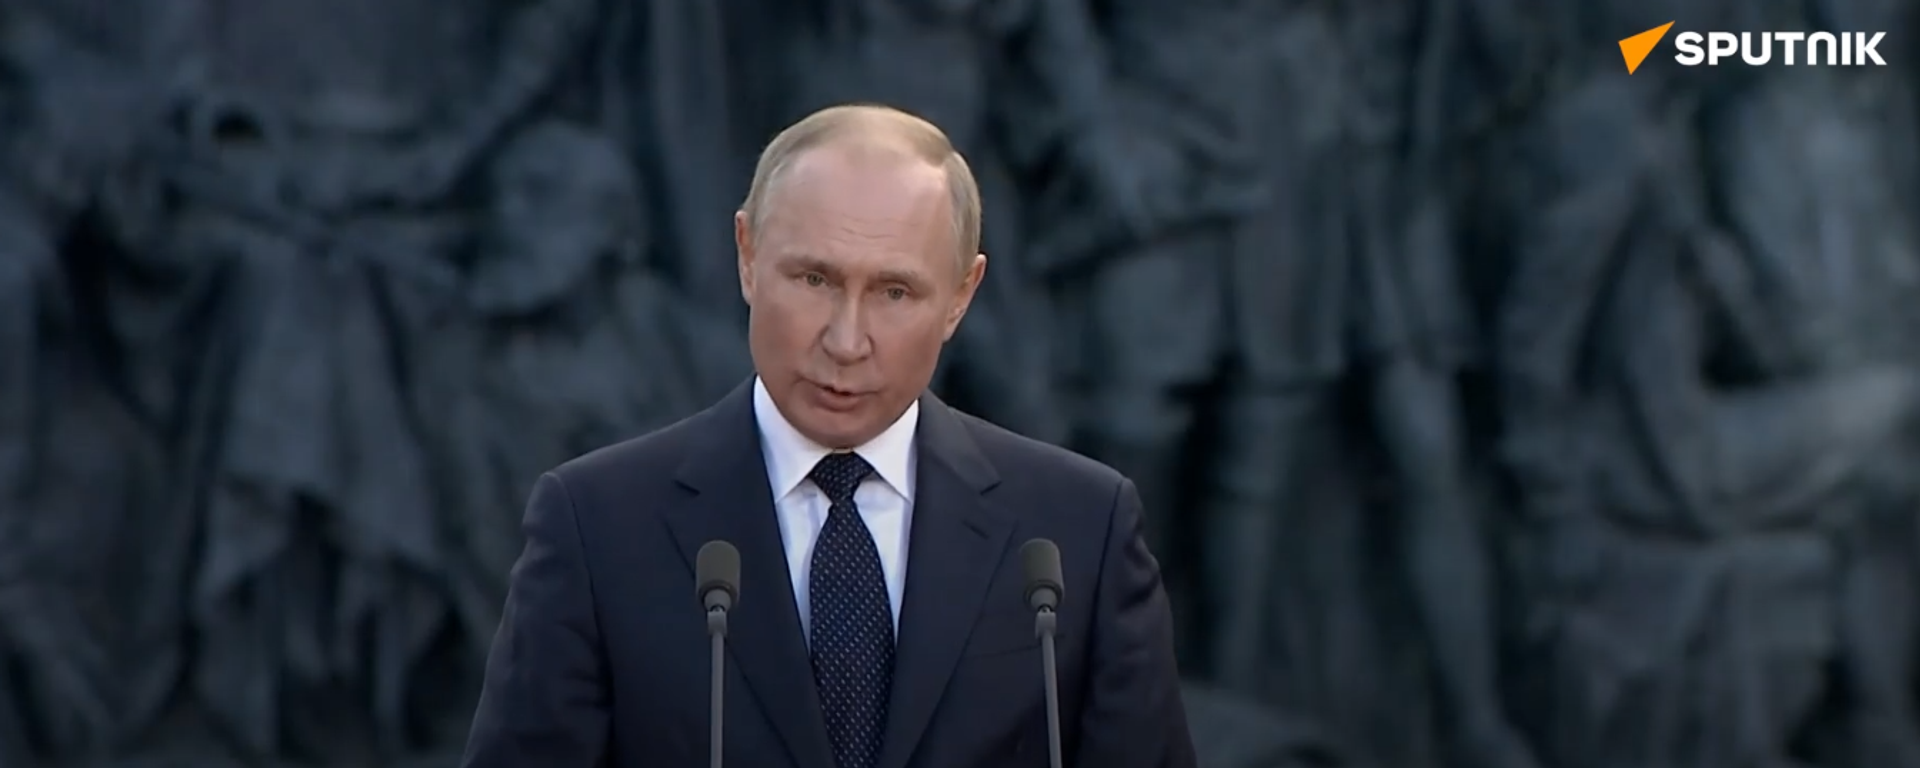 Putin: Nga sẽ không lặp lại những sai lầm trong quá khứ và sẽ không từ bỏ chủ quyền của mình - Sputnik Việt Nam, 1920, 21.09.2022